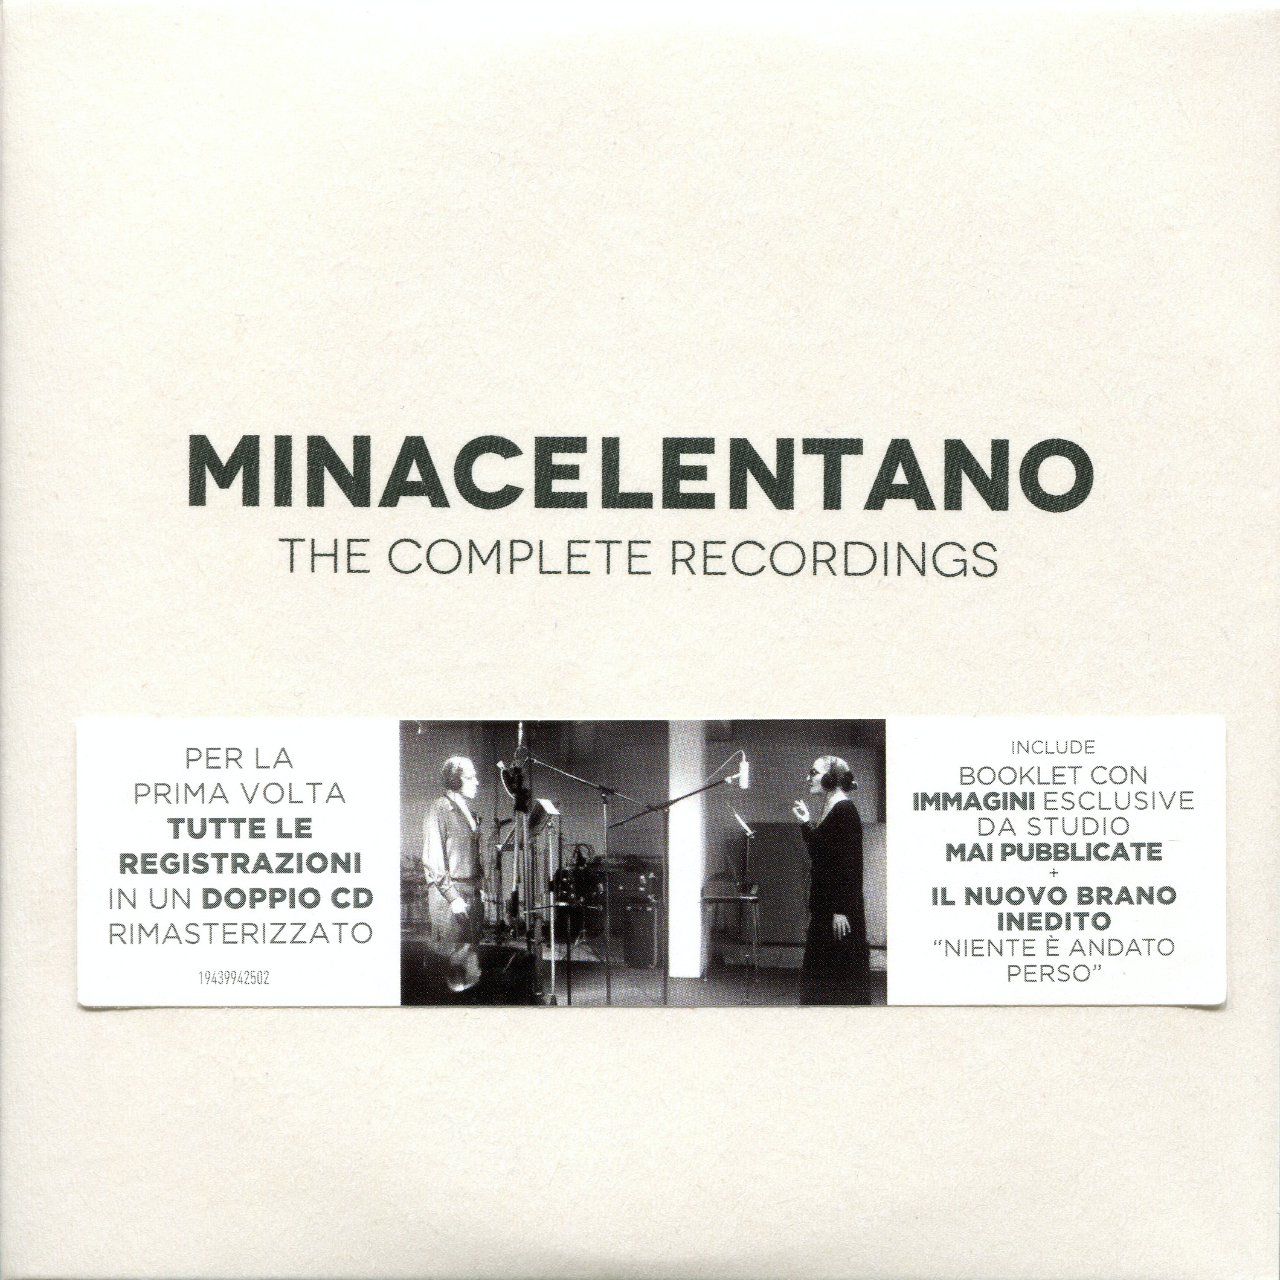 Mina-Celentano - The complete recordings | Portfolio Giordano Mazzi | giordanomazzi.com